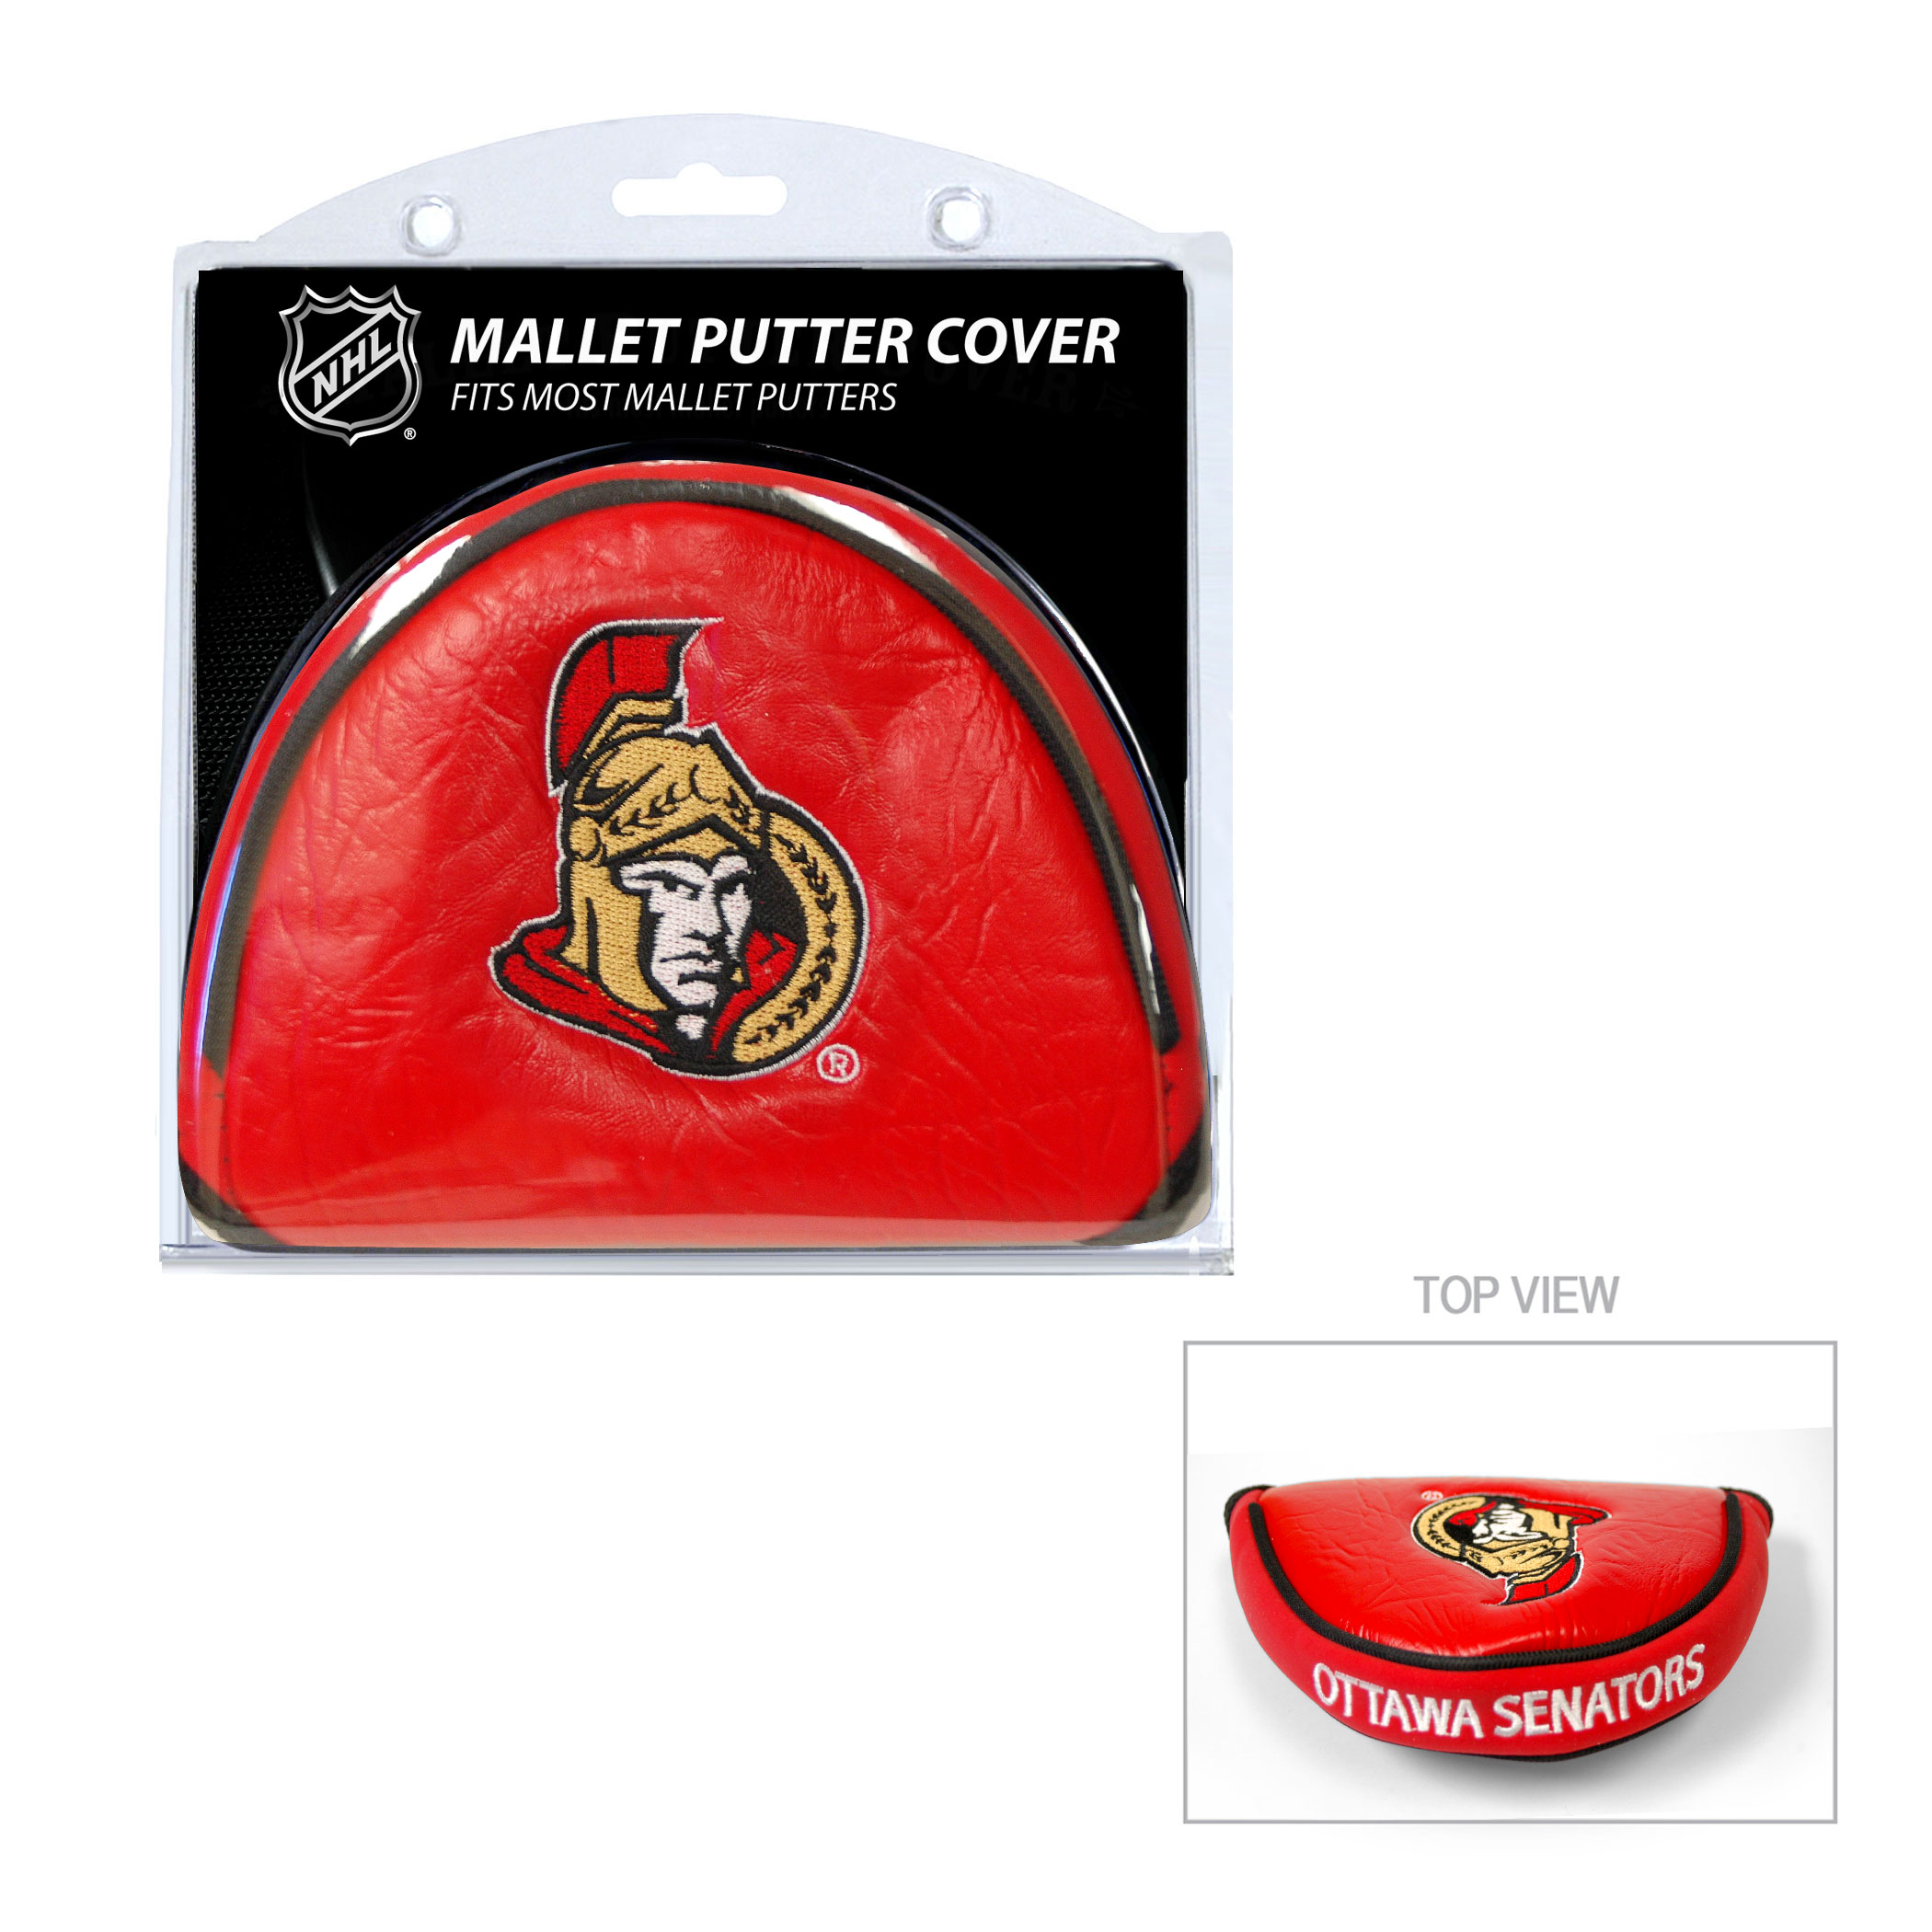 Ottawa Senators Mallet Putter Cover